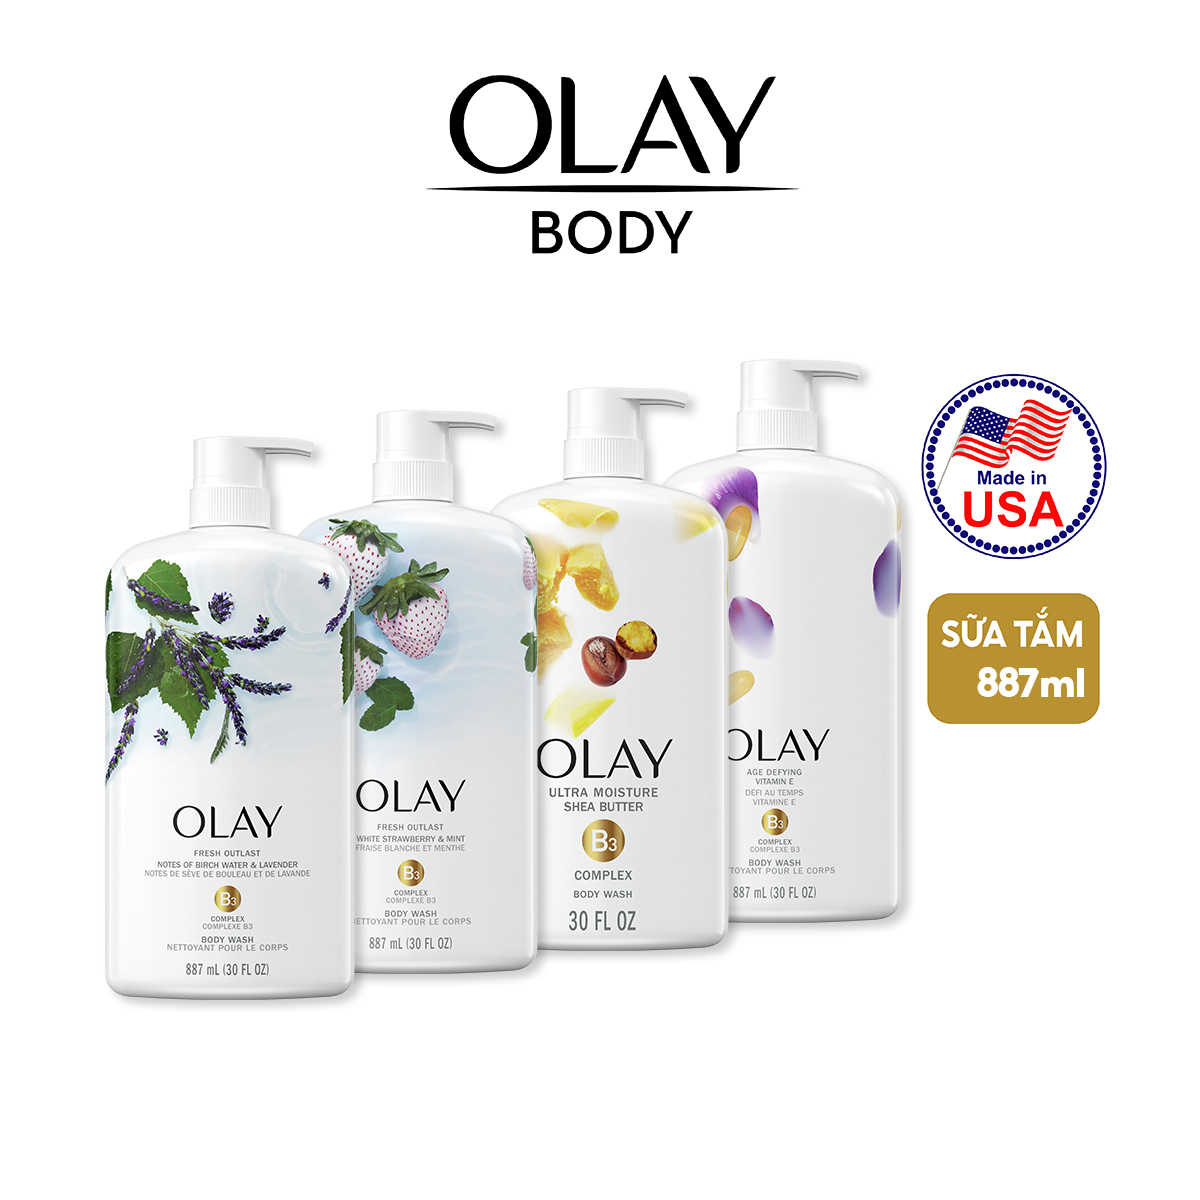 Sữa tắm Olay Body Wash 887ml